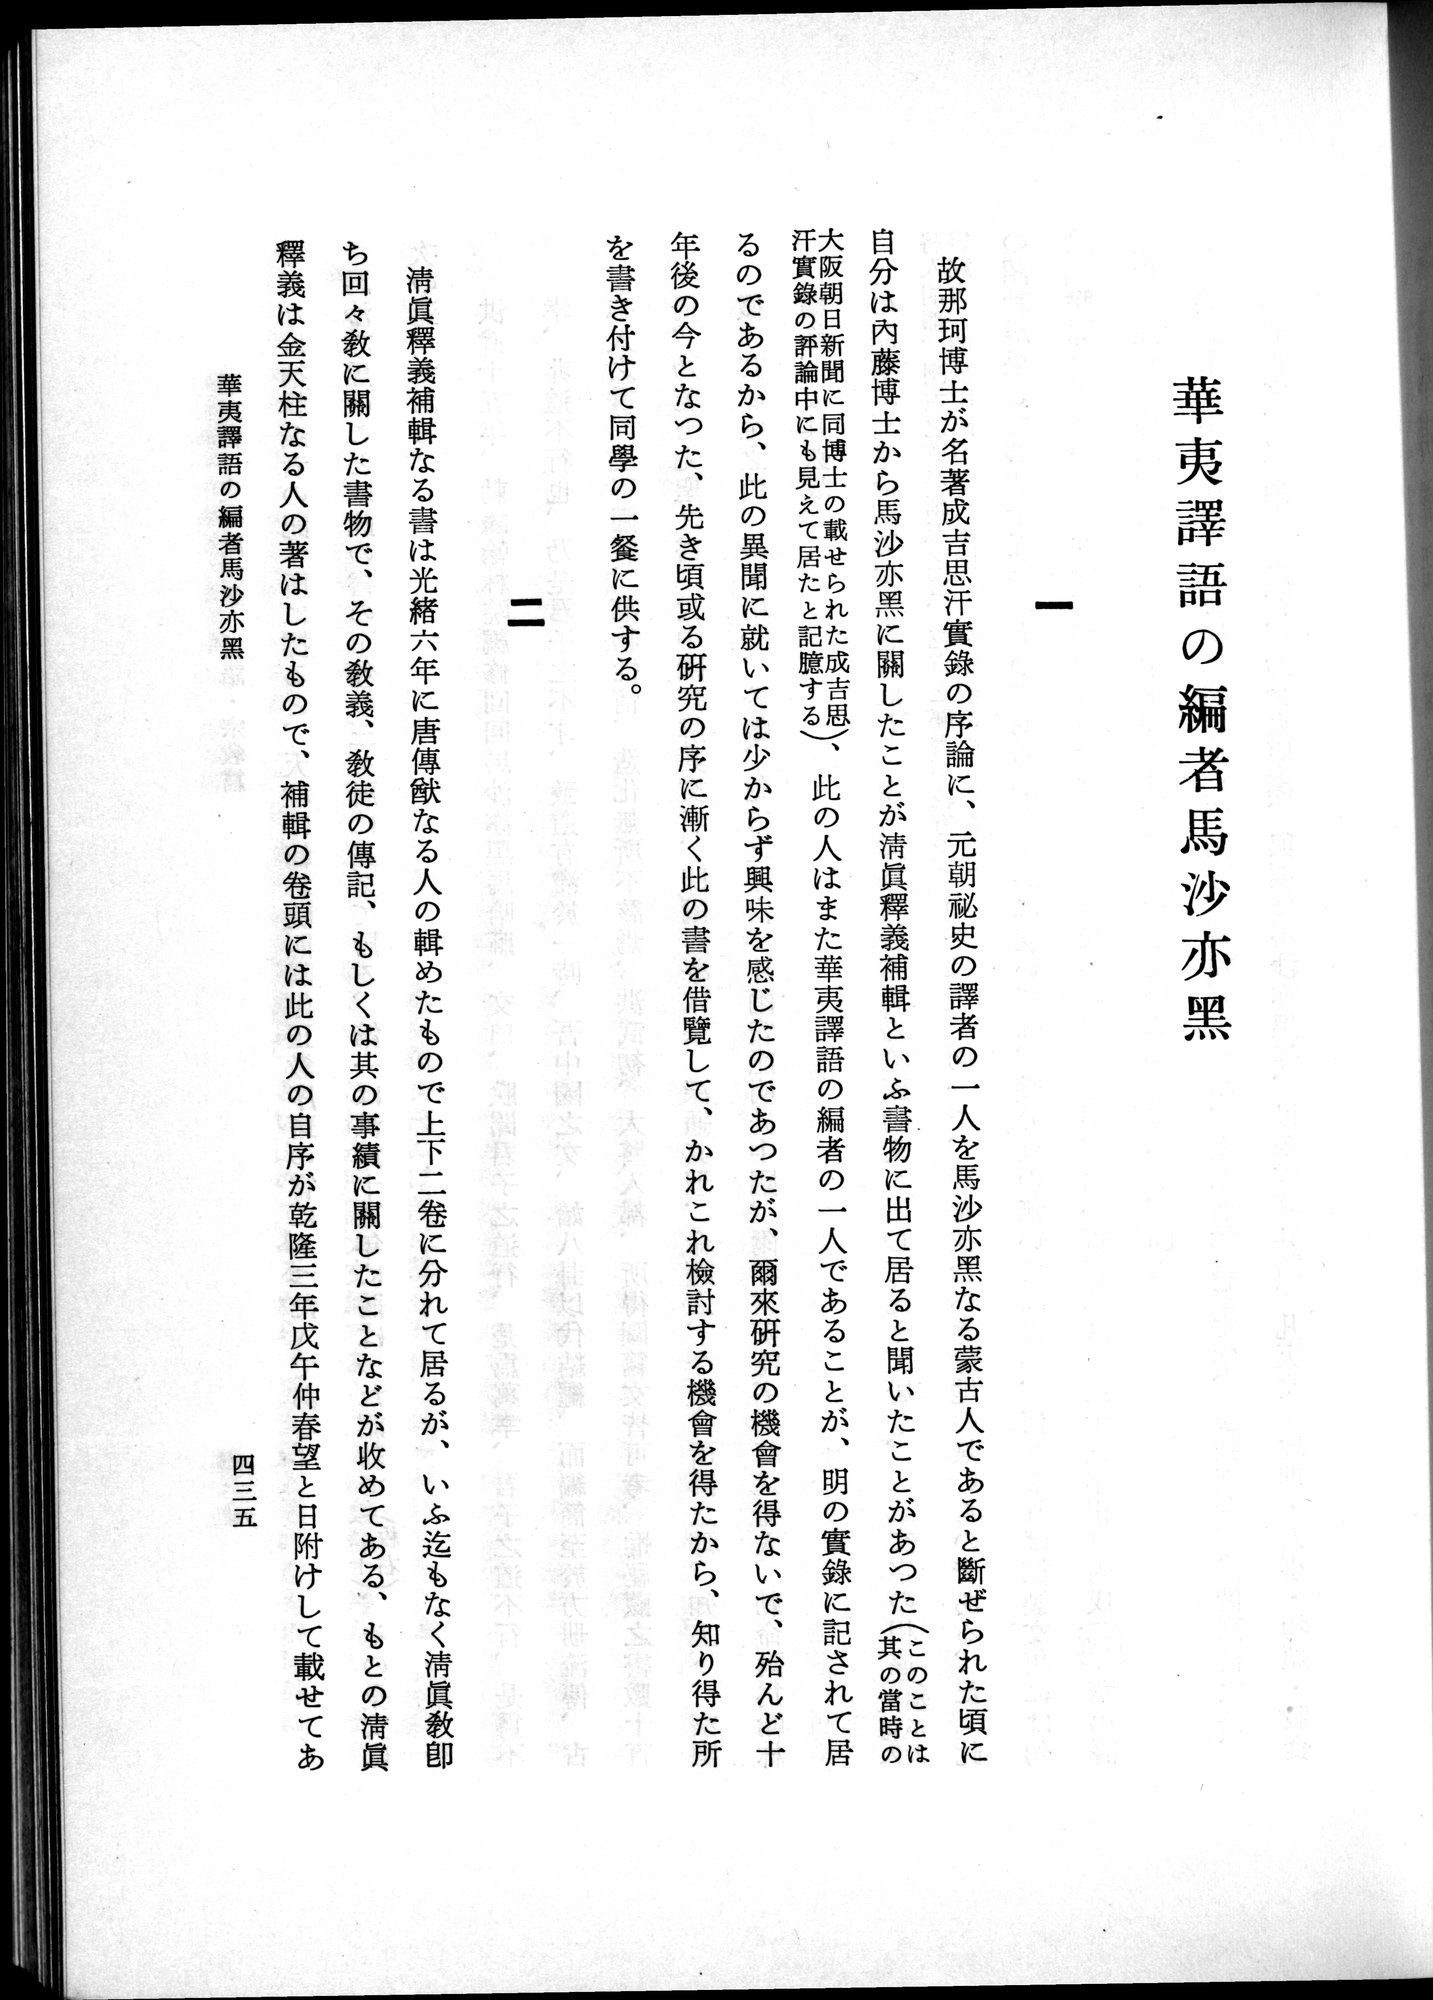 羽田博士史学論文集 : vol.2 / Page 497 (Grayscale High Resolution Image)